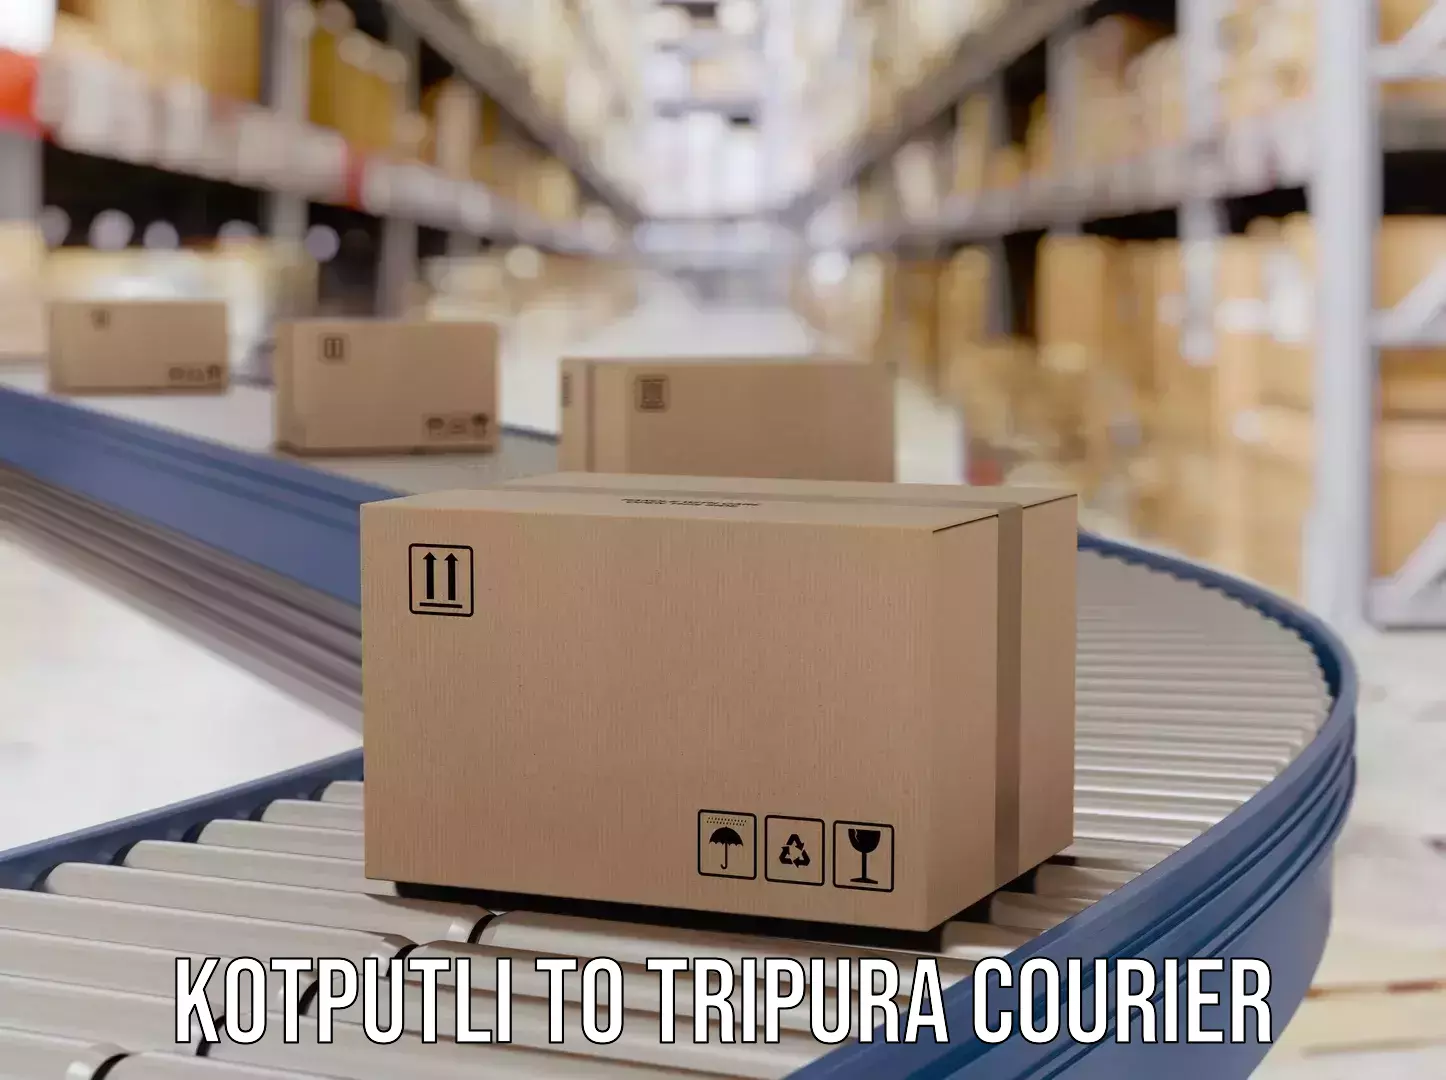 Custom courier packages Kotputli to Udaipur Tripura